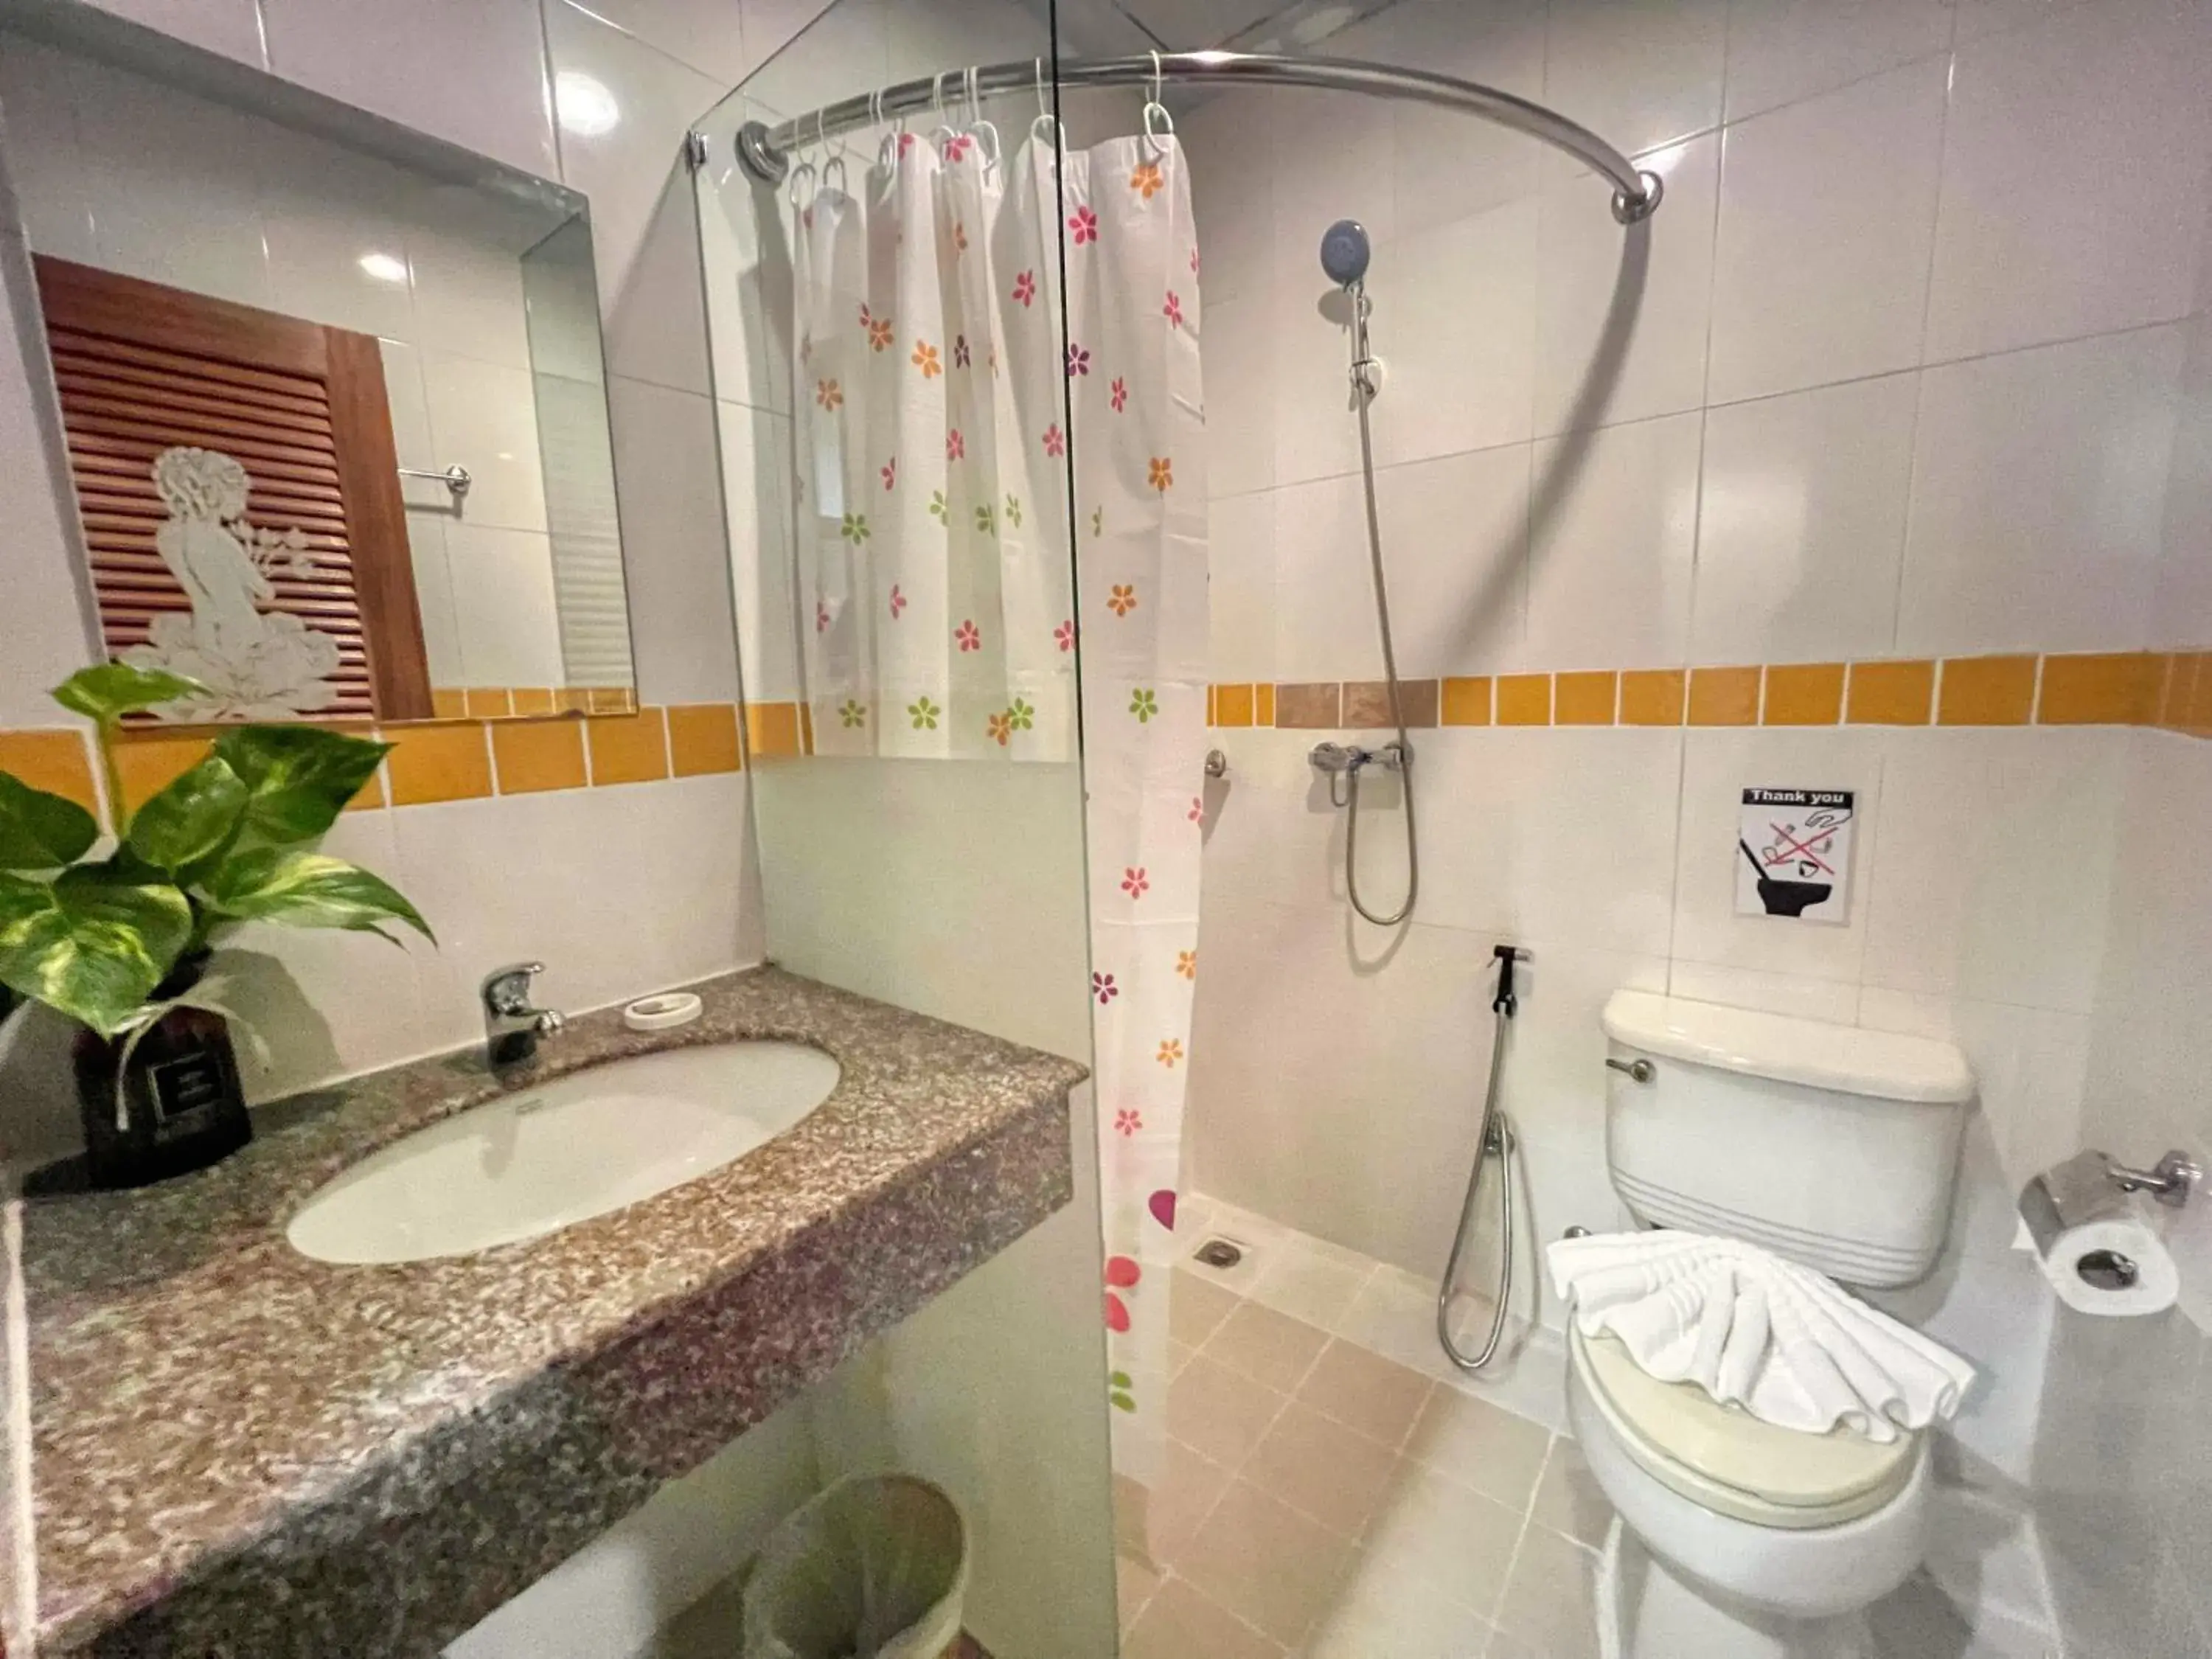 Toilet, Bathroom in PJ Patong Resortel